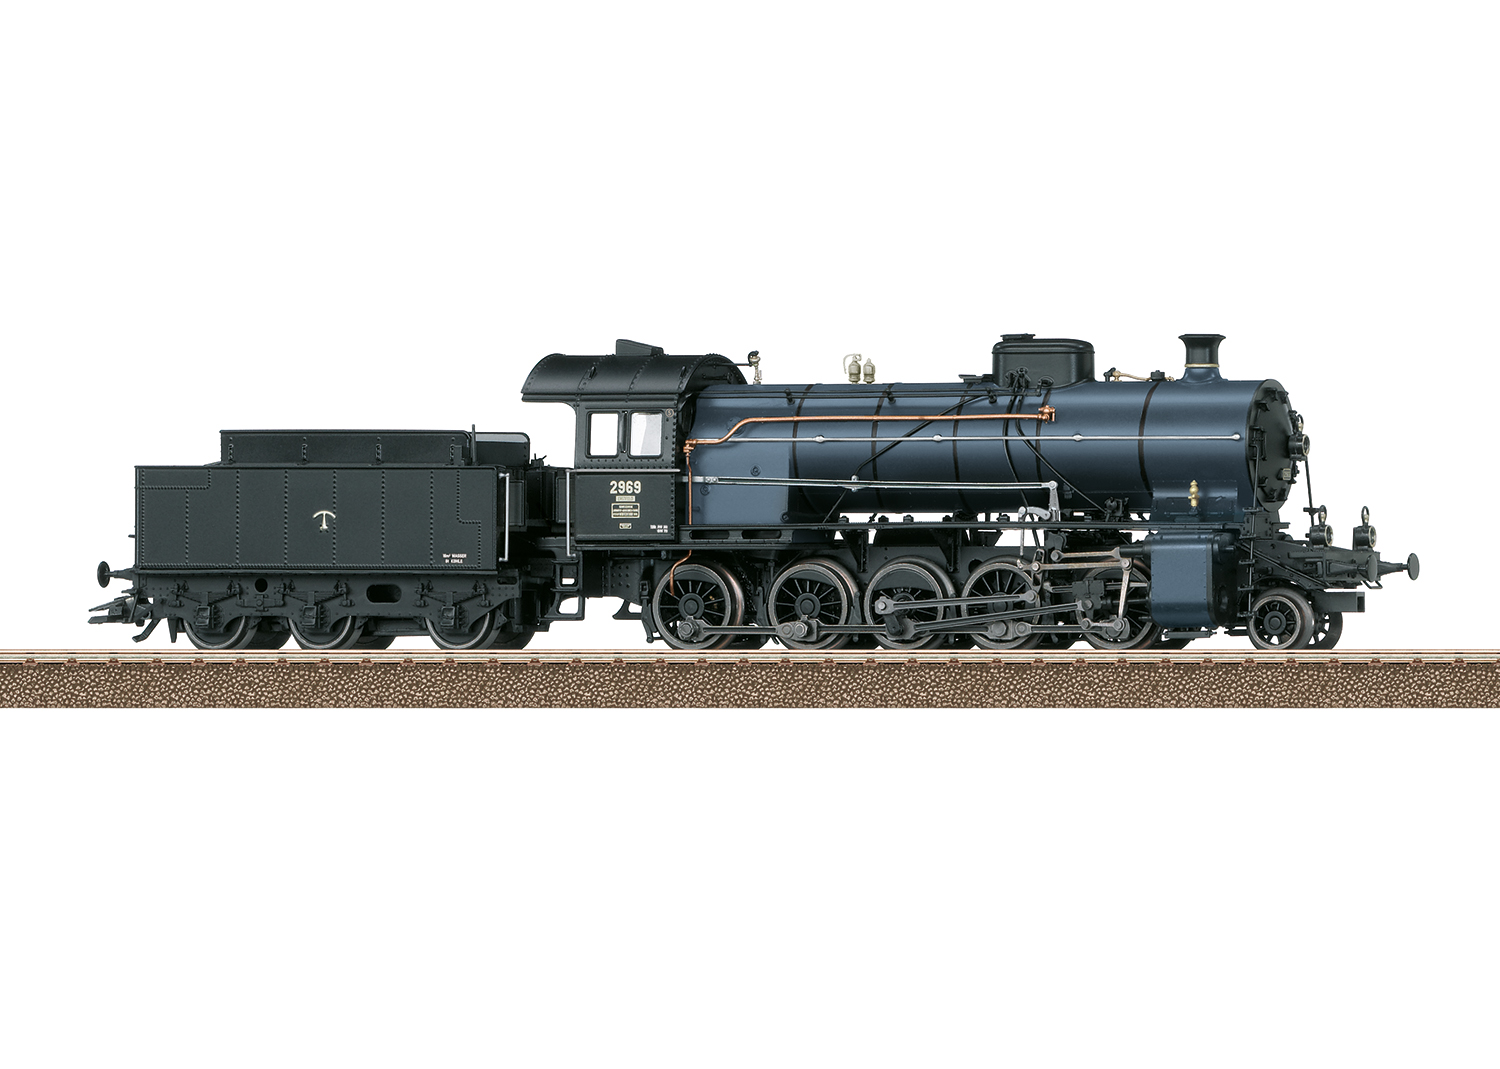 Dampflok C 5/6 2969 SBB Dampflokomotive mit Schlepptender Serie C 5/6 Elefant